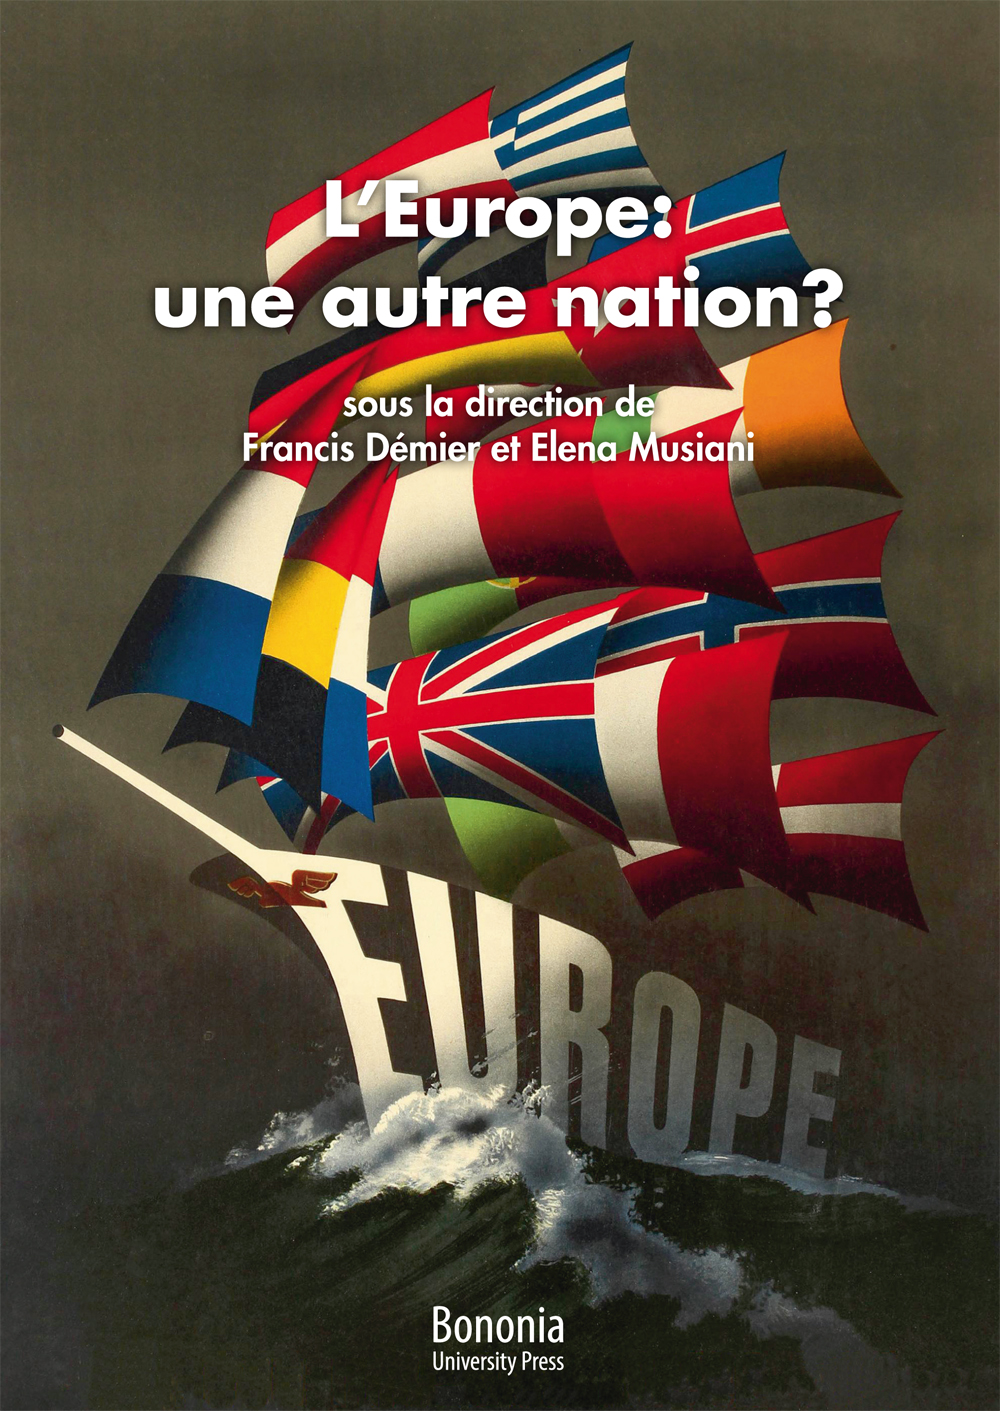 L'Europe: une autre nation? - Bologna University Press